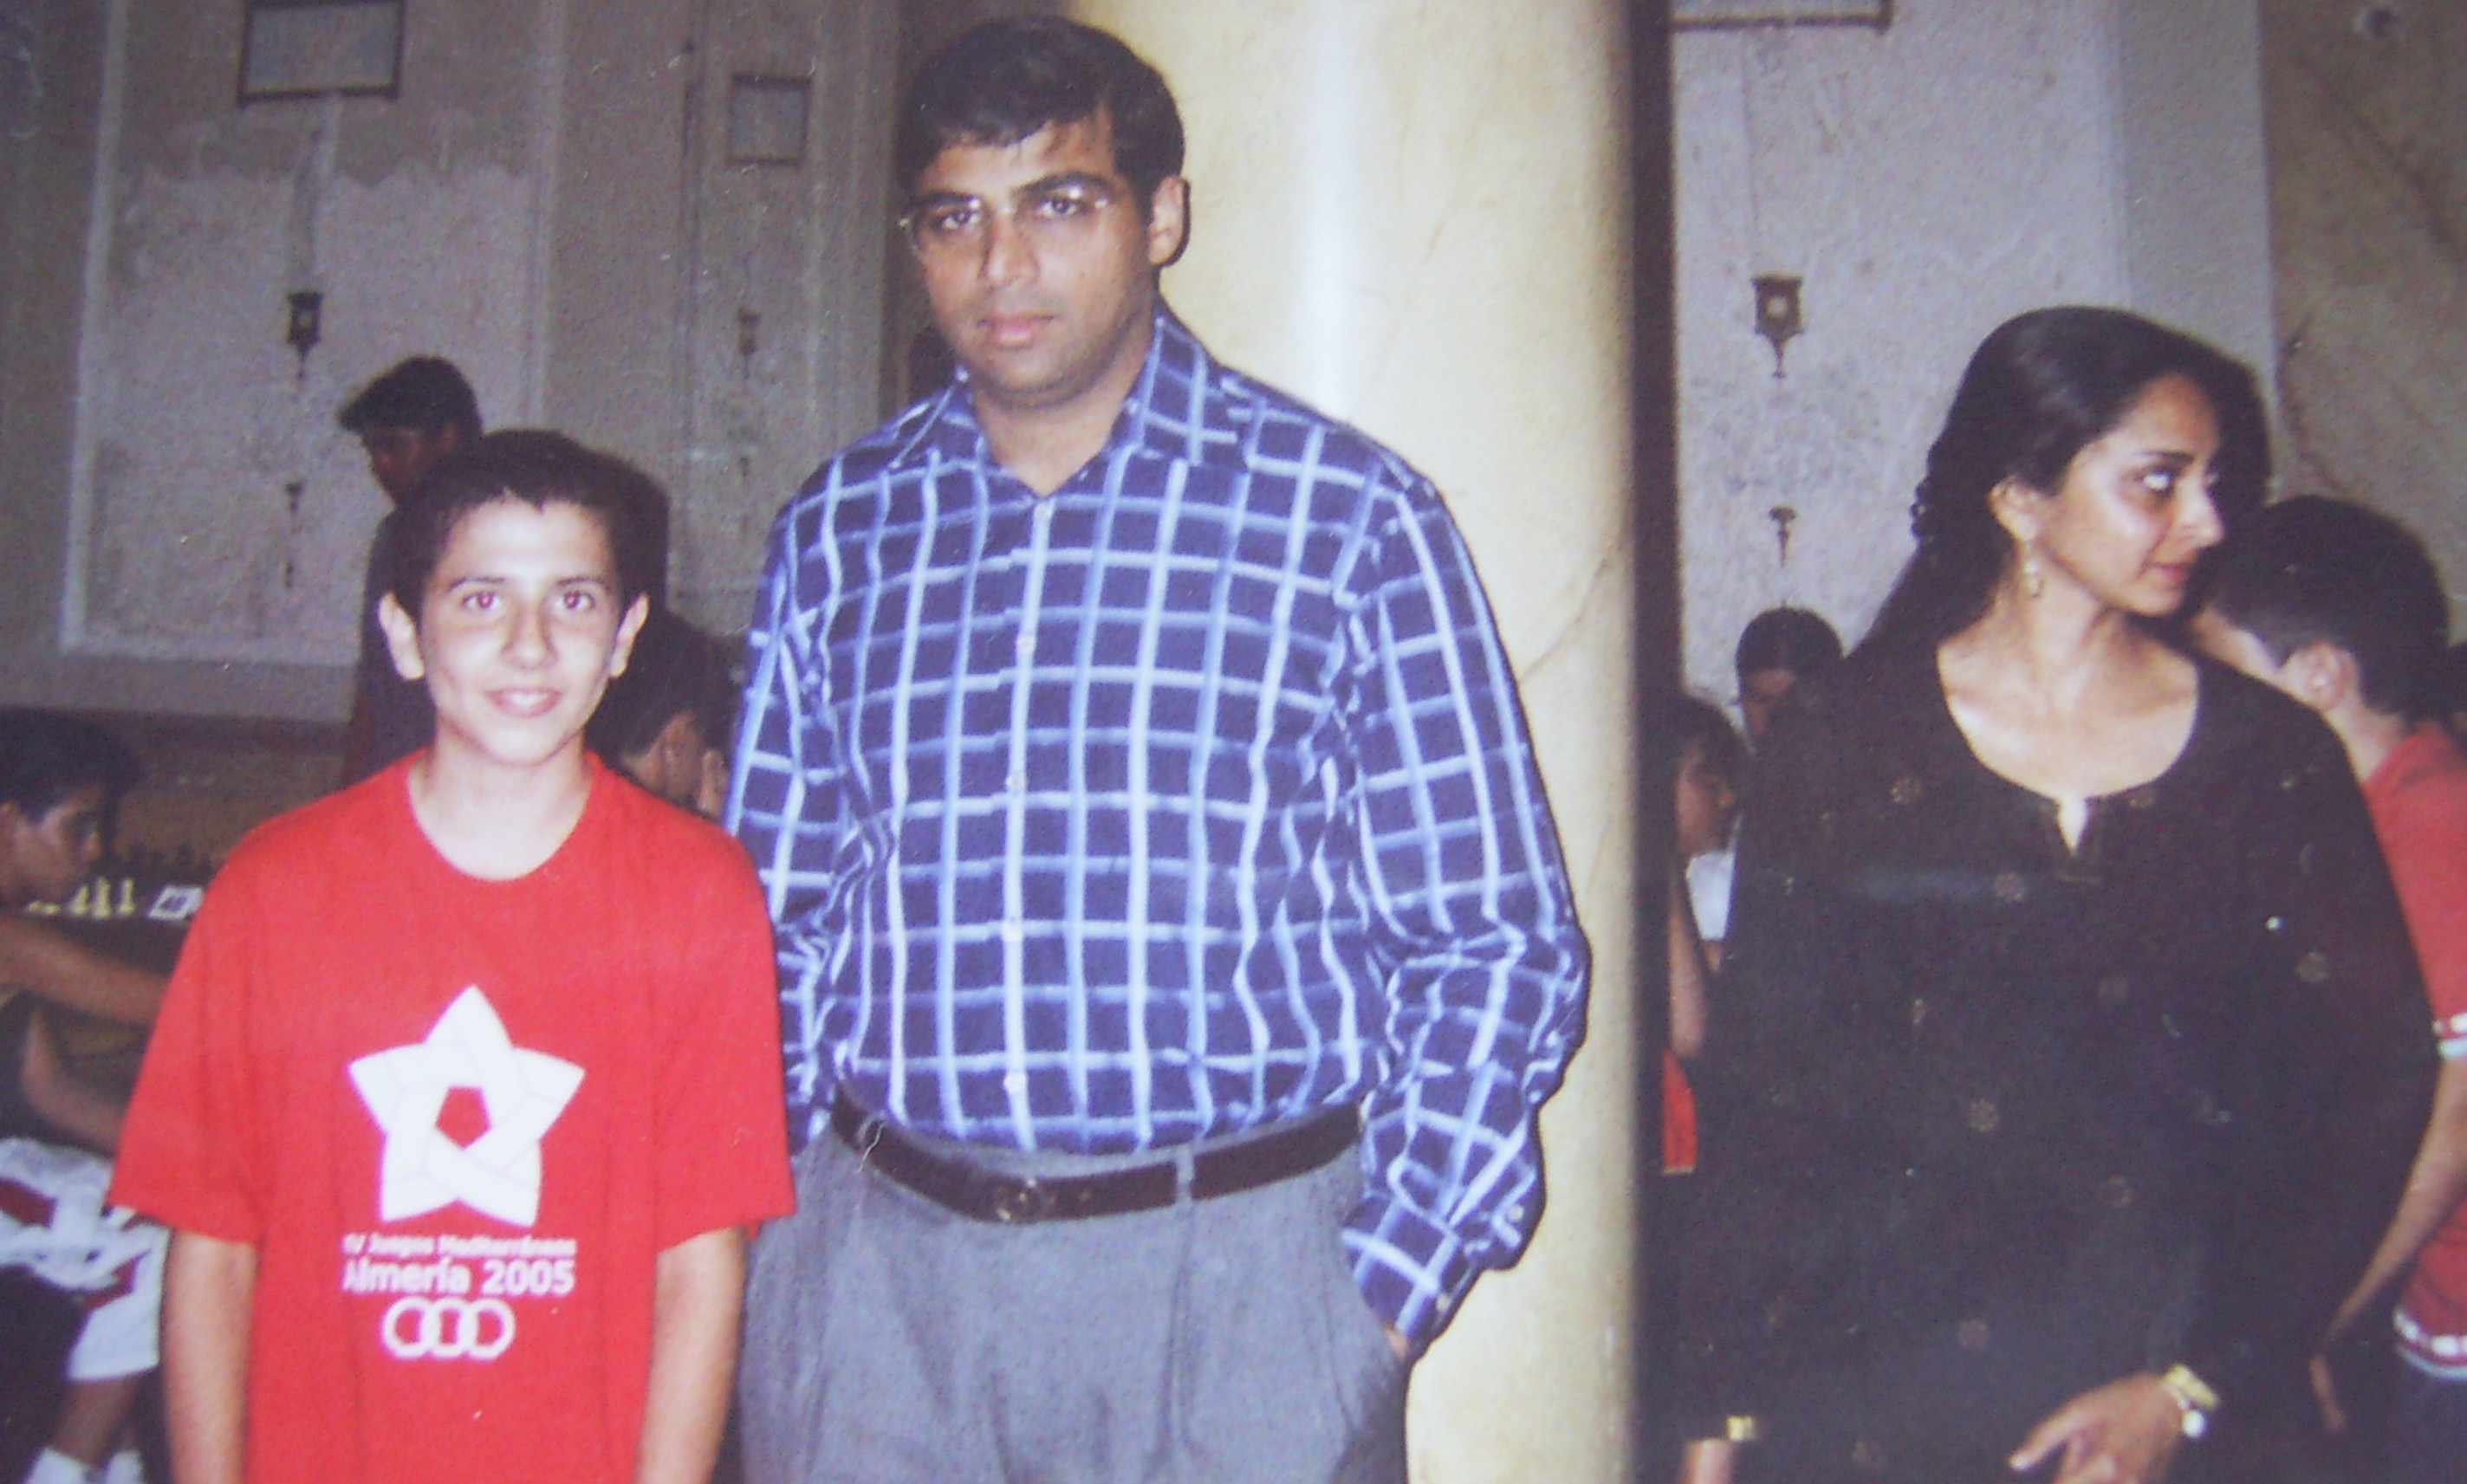  Con el Excampeón del Mundo de Ajedrez Viswanathan Anand.